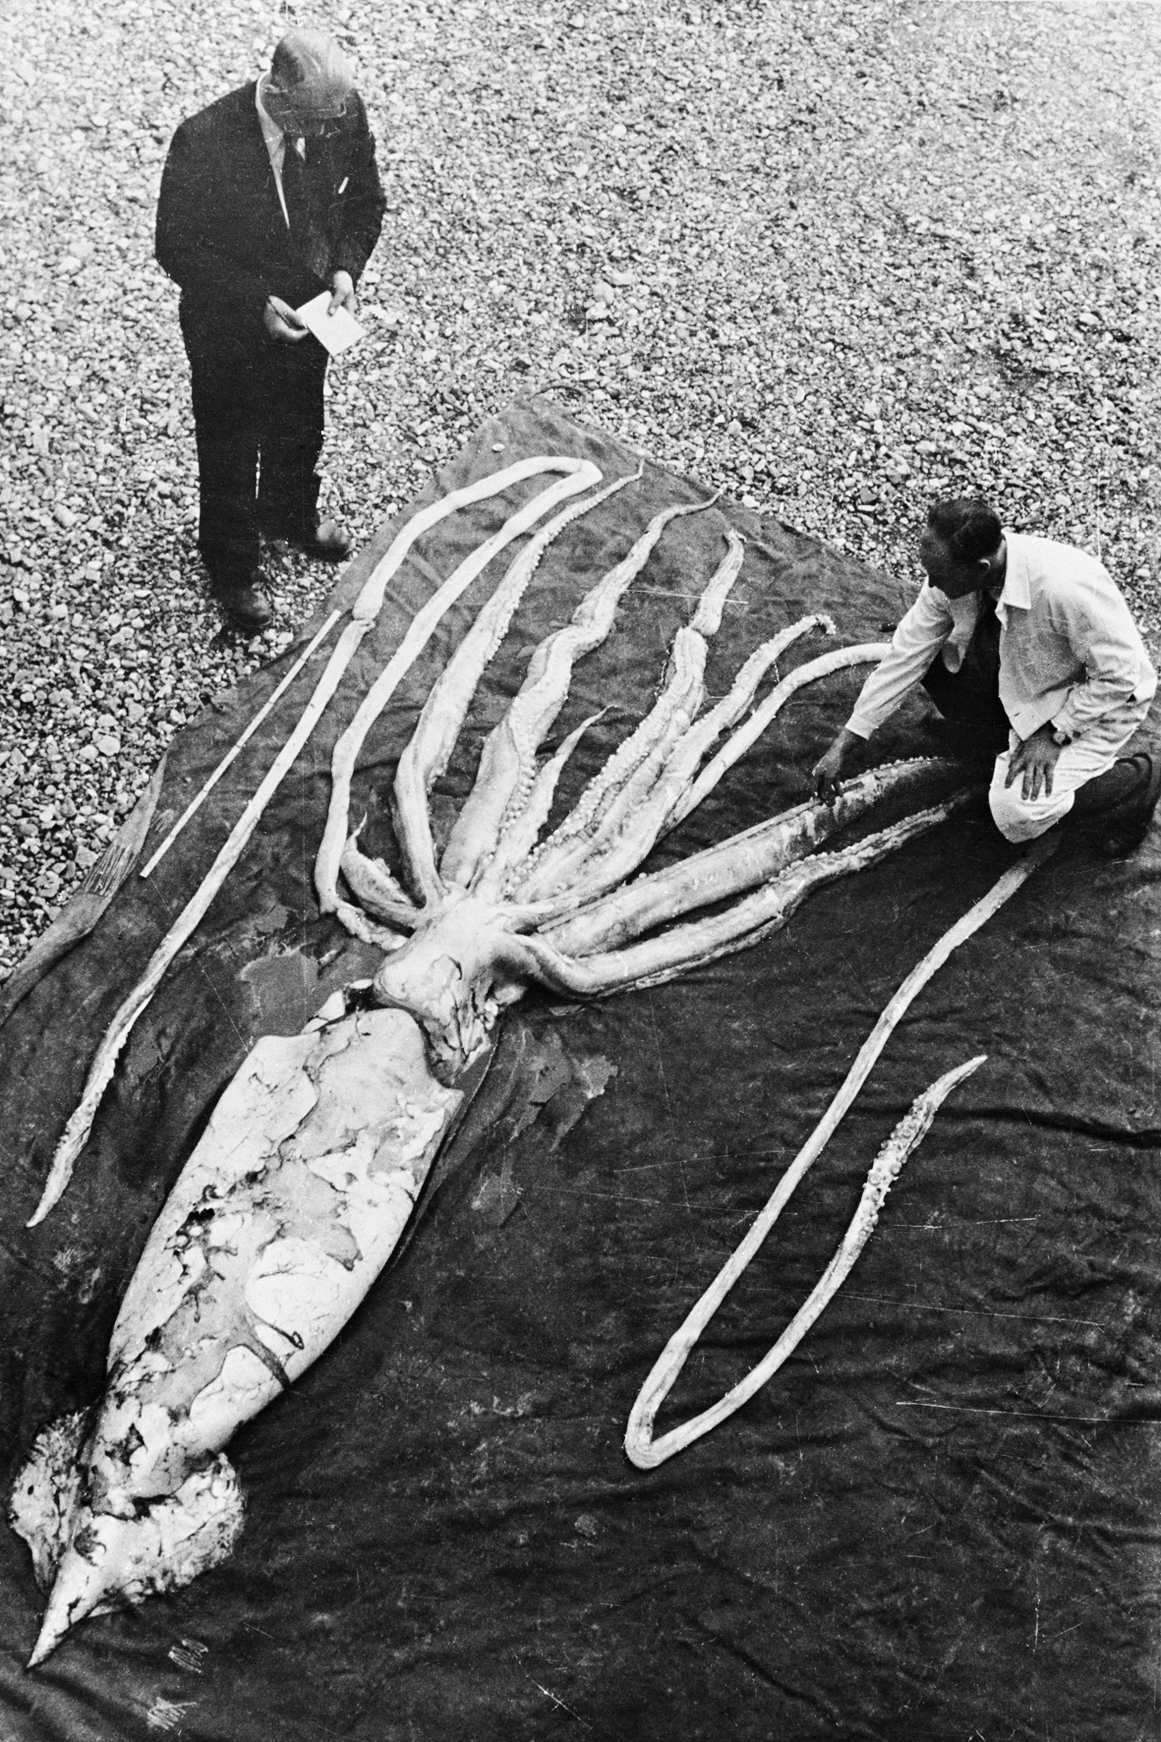 Величезний кальмар, знайдений у Ранхеймі в Тронхеймі 2 жовтня 1954 року, вимірюється професорами Ерлінгом Сівертсеном і Свейн Хафторном. Загальна довжина екземпляра (другого за величиною головоногого) становила 9.2 метра. Музей природної історії та археології НТНУ / Wikimedia Commons